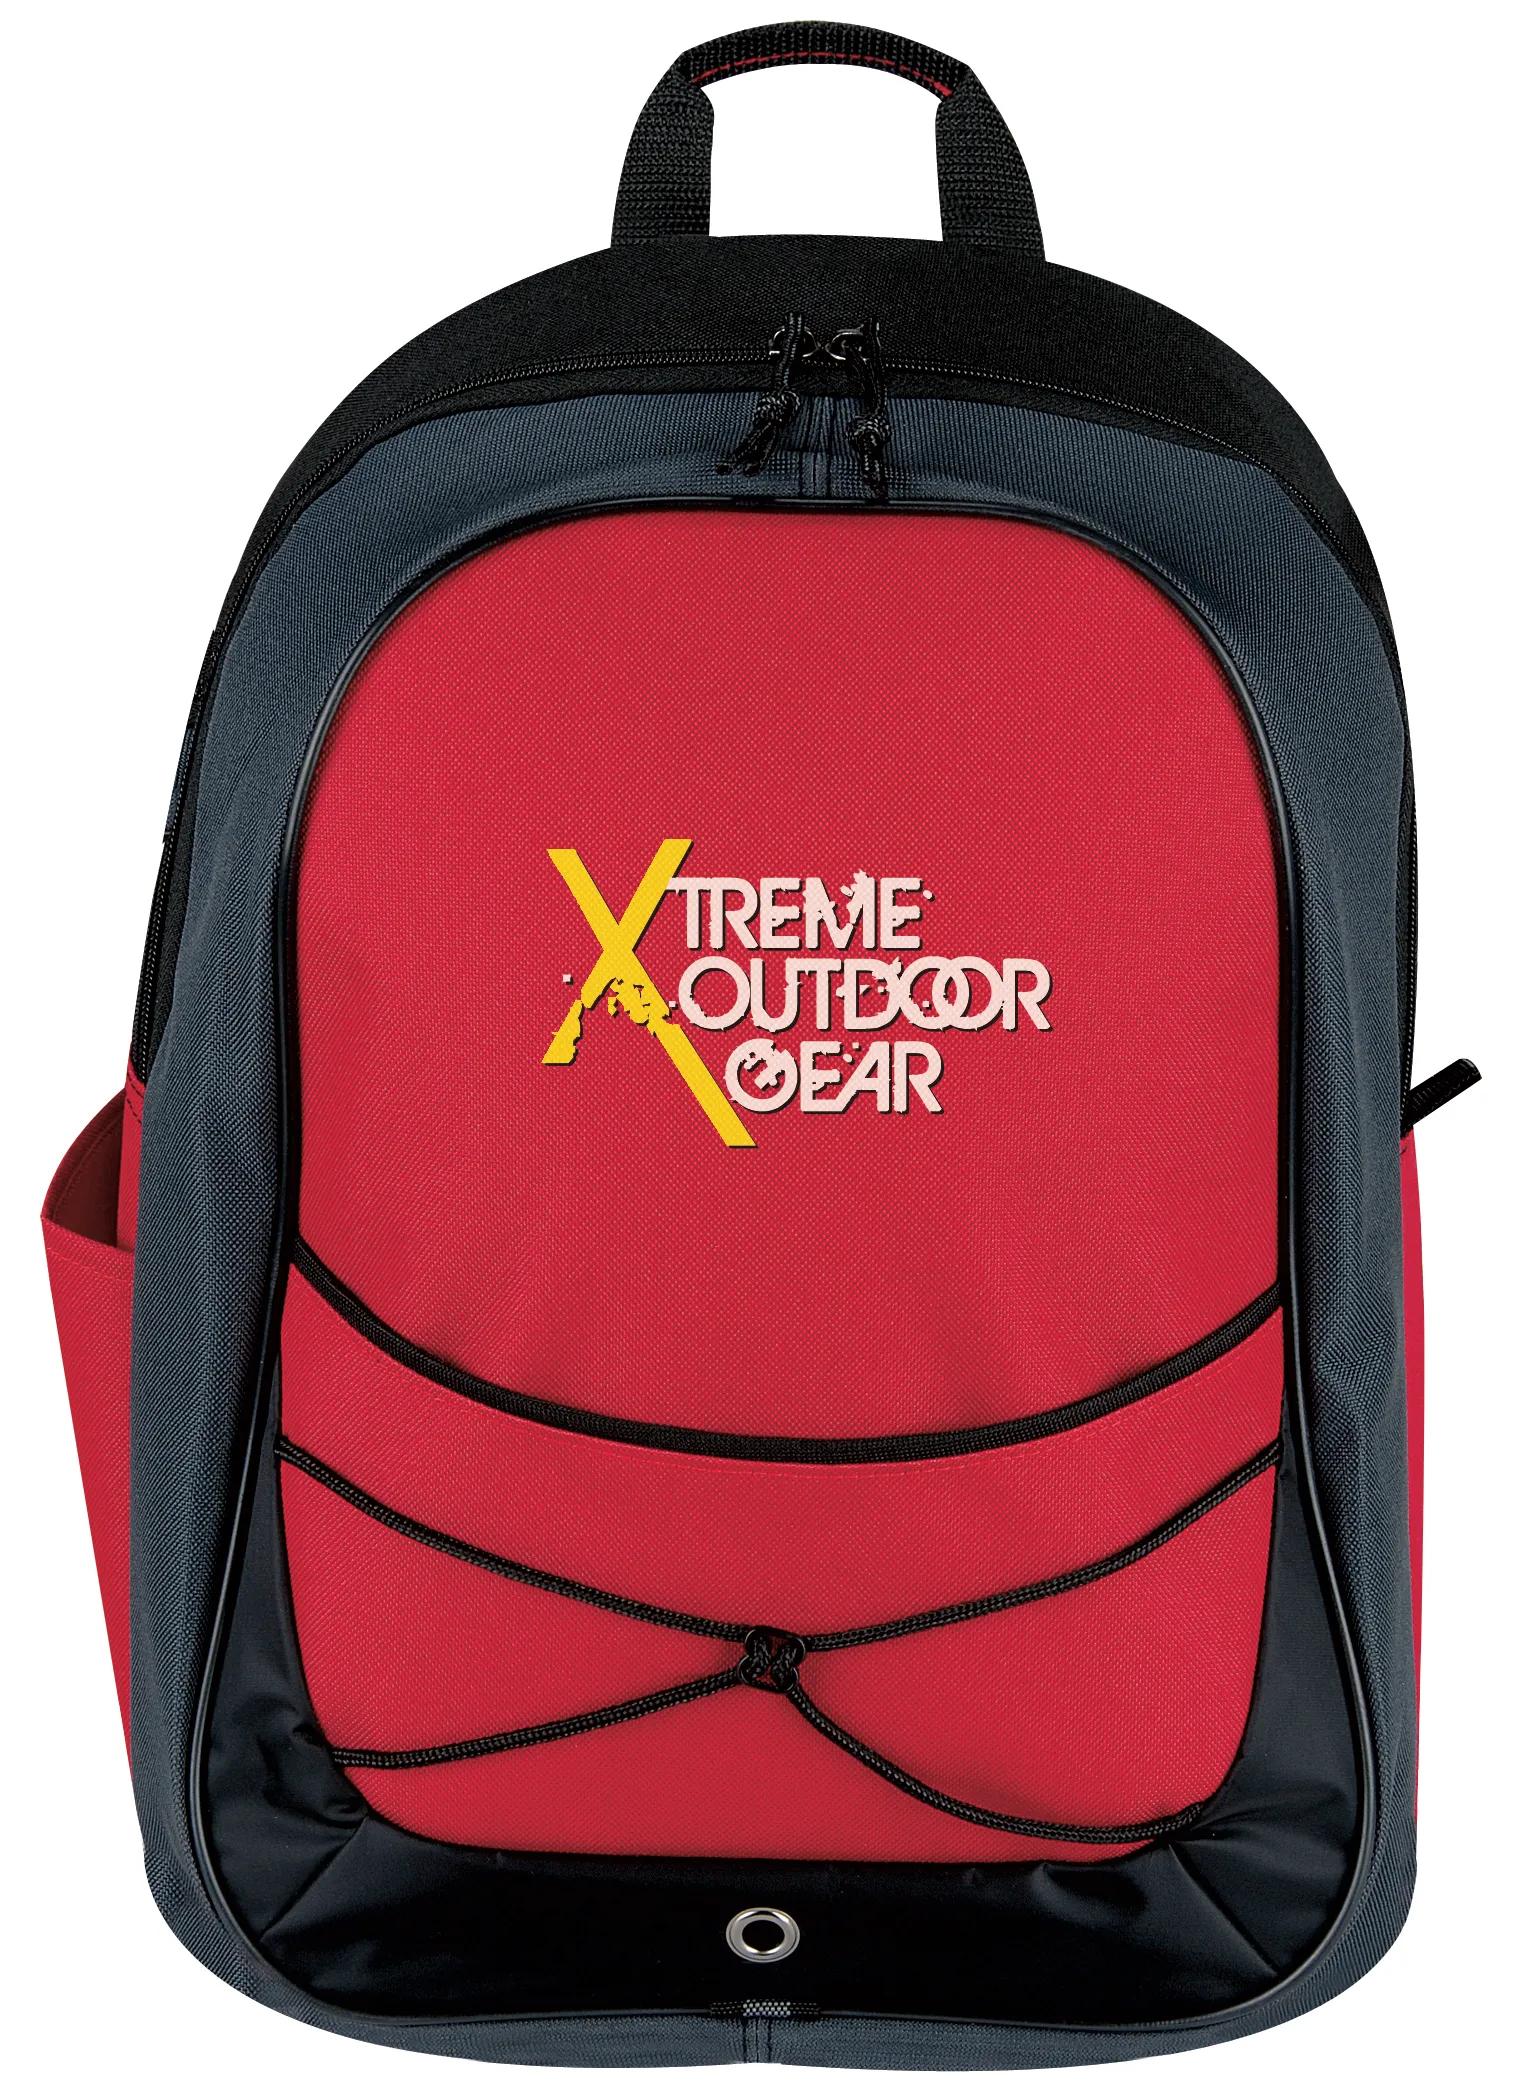 Tri-Tone Sport Backpack 6 of 8